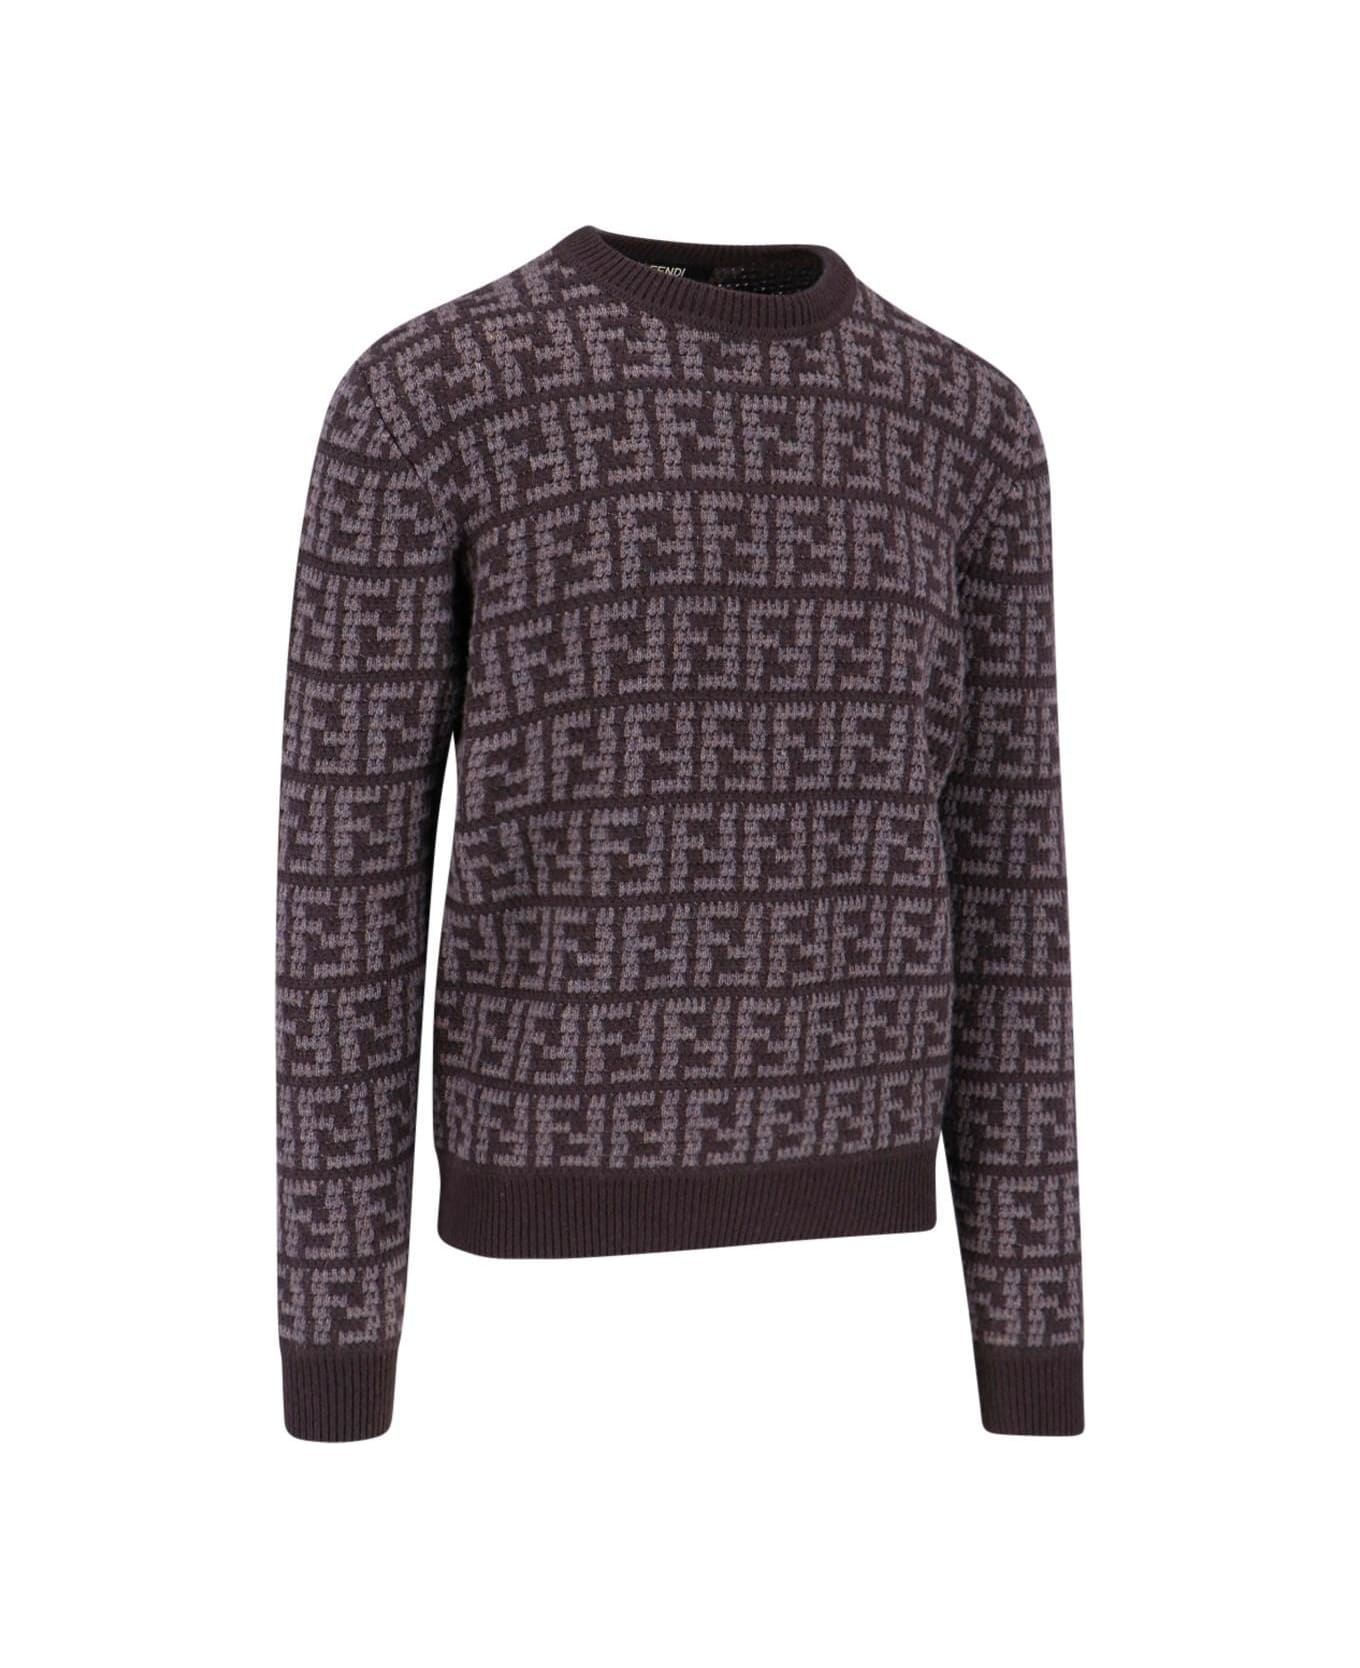 Fendi Embroidered Cashmere Sweater - Cordovan Pecan